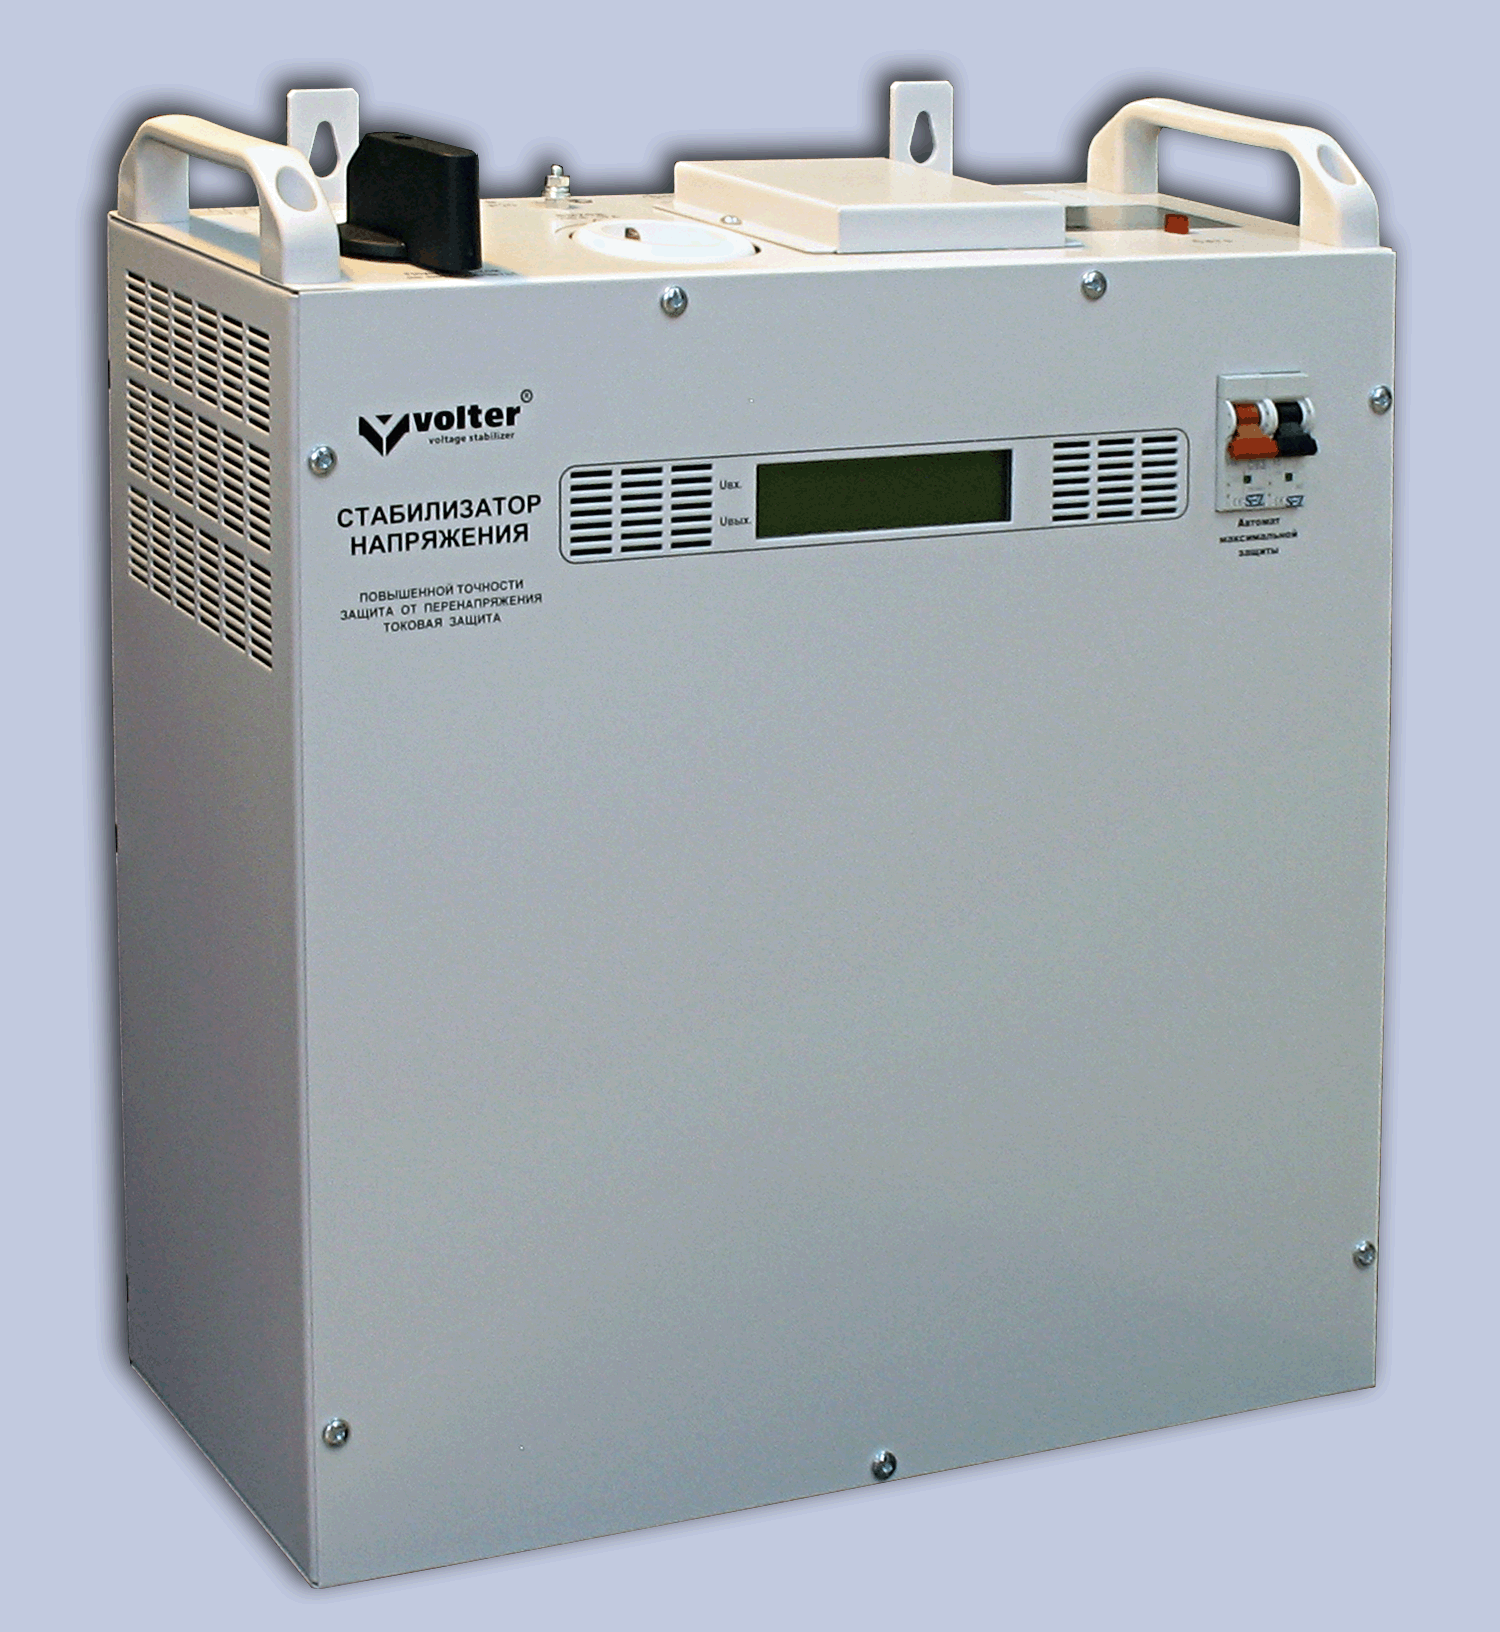 Стабилизатор 1-фазный СНПТО- 7 шс, мощность 7кВт, размеры 350х420х160, масса 28,4кг